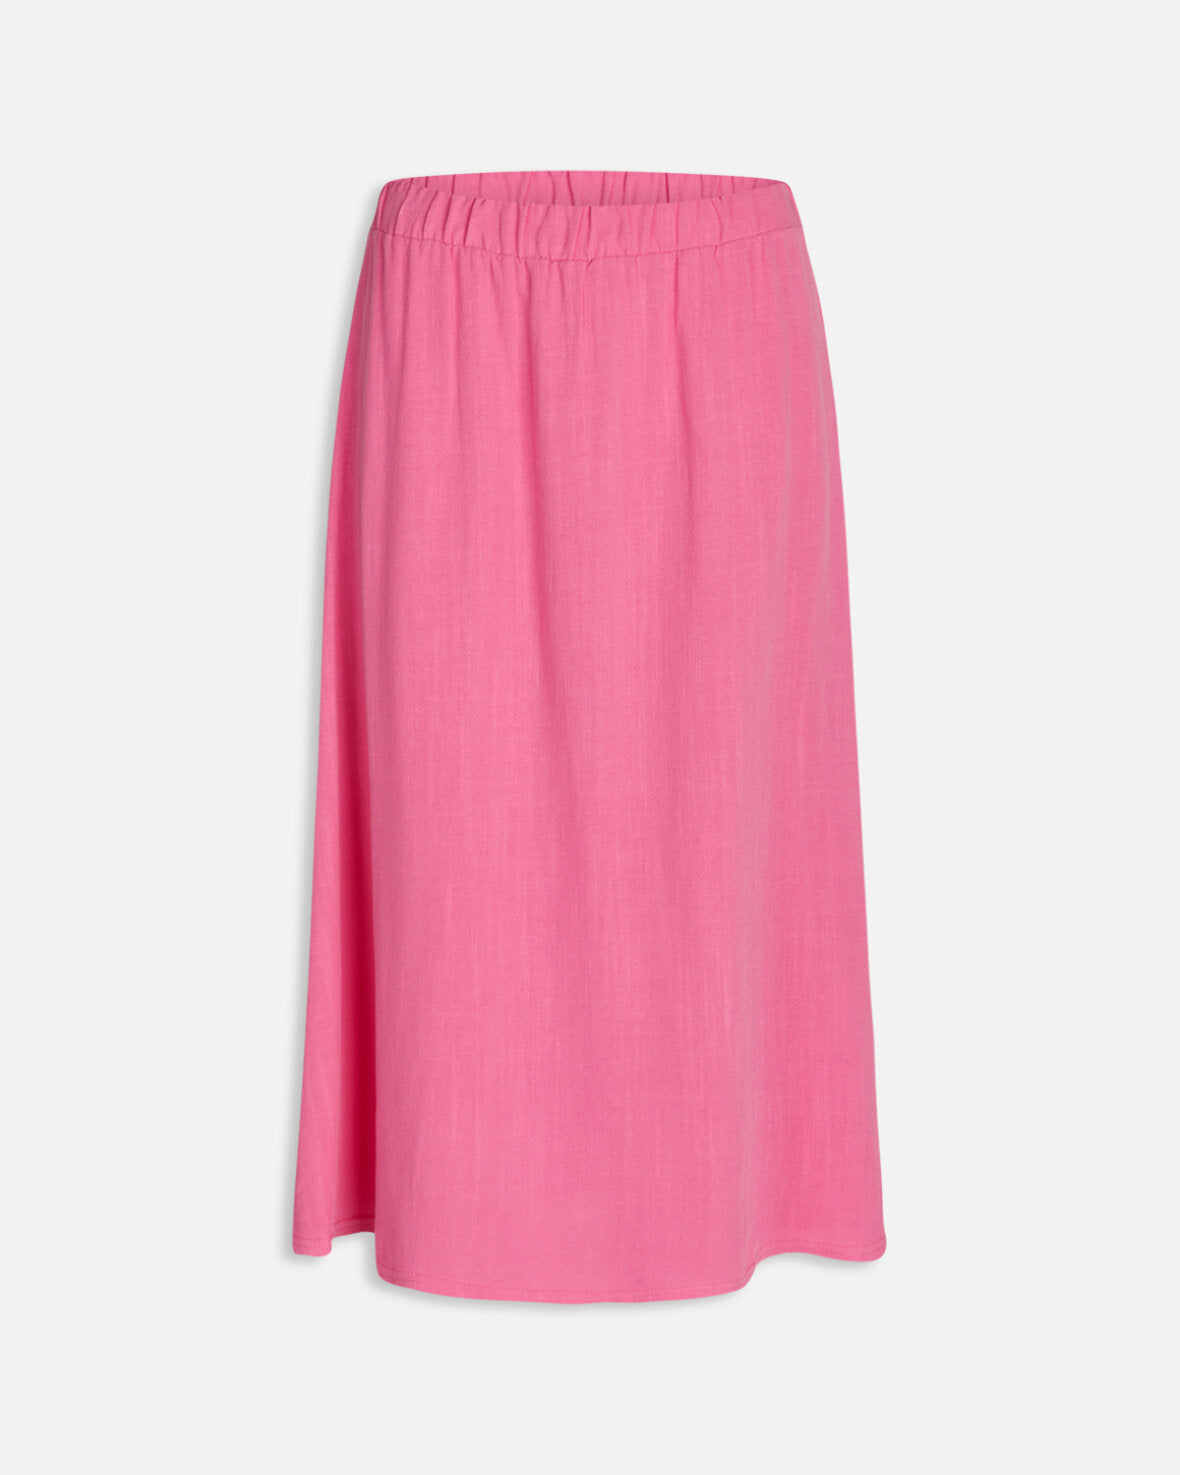 GULIC-SK Pink van Sisterpoint te koop bij LEEF mode en accessoires Meppel